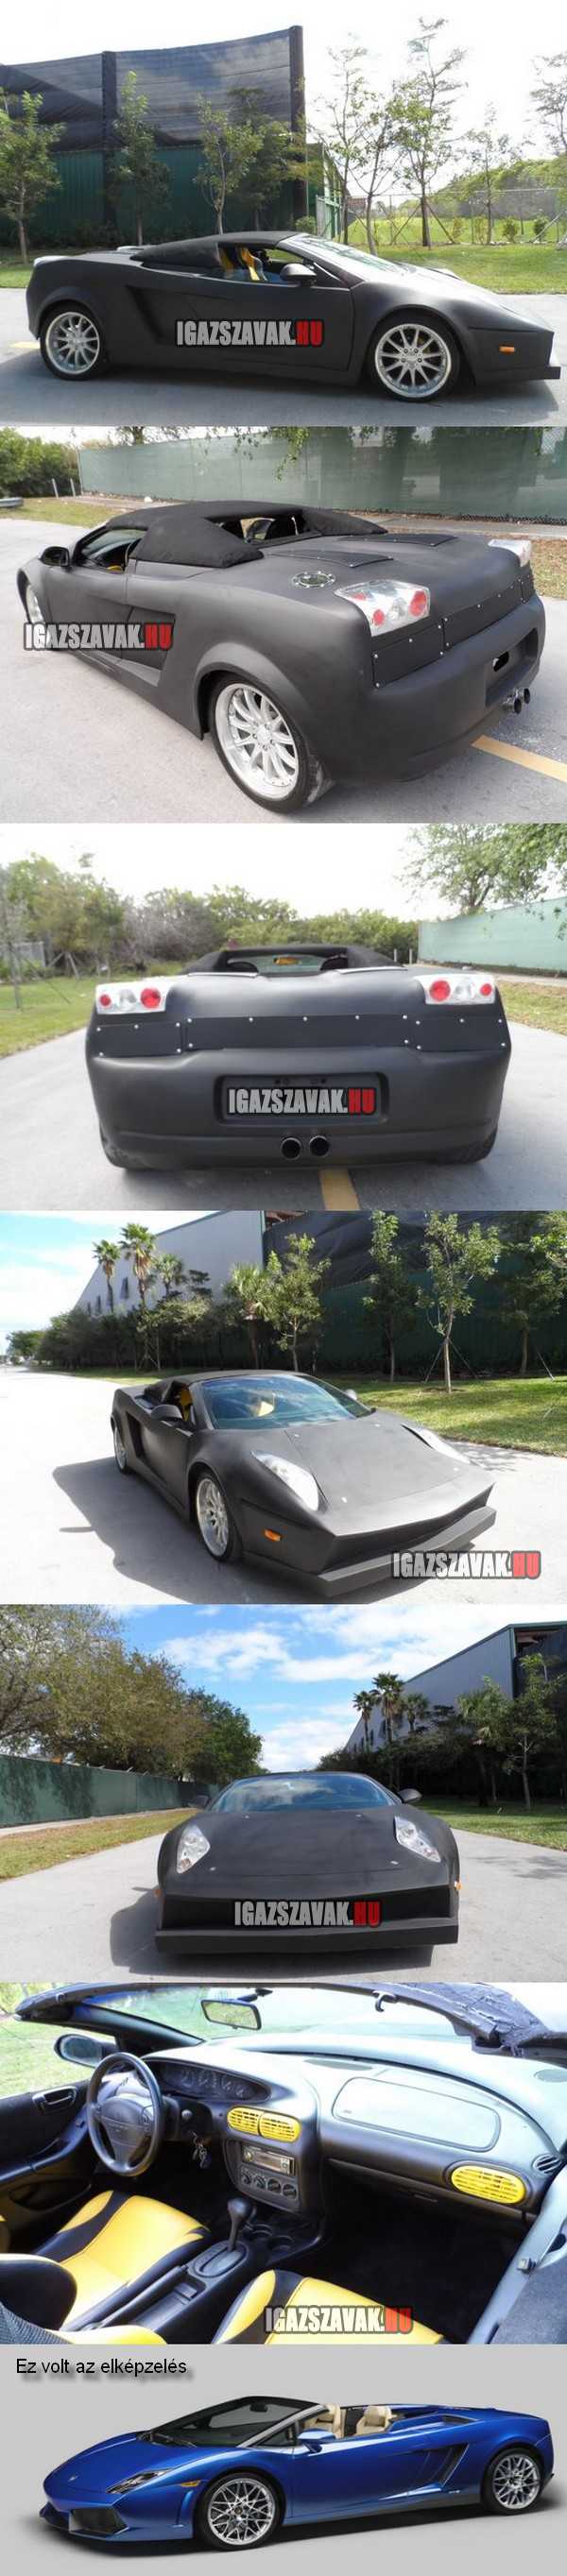 Lamborghini Gallardo replica Dodge alapon, házi készítés